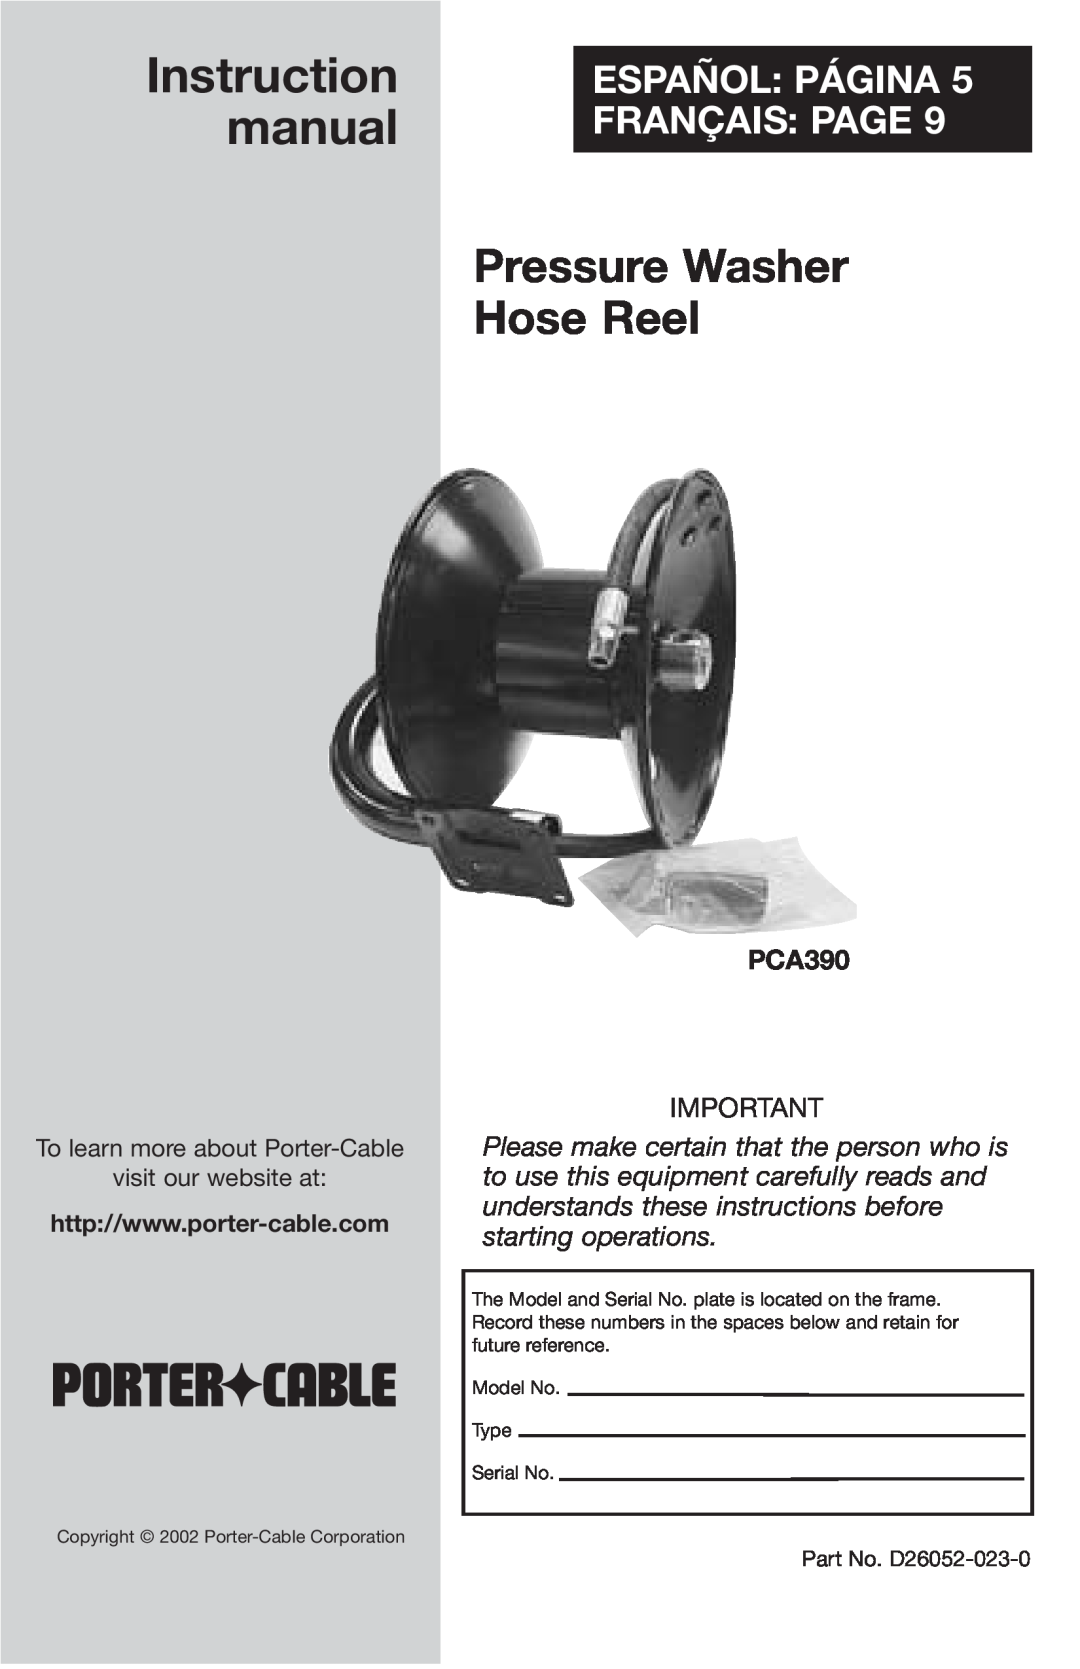 Porter-Cable D26052-023-0 instruction manual PCA390, Pressure Washer Hose Reel, Español Página Français Page 